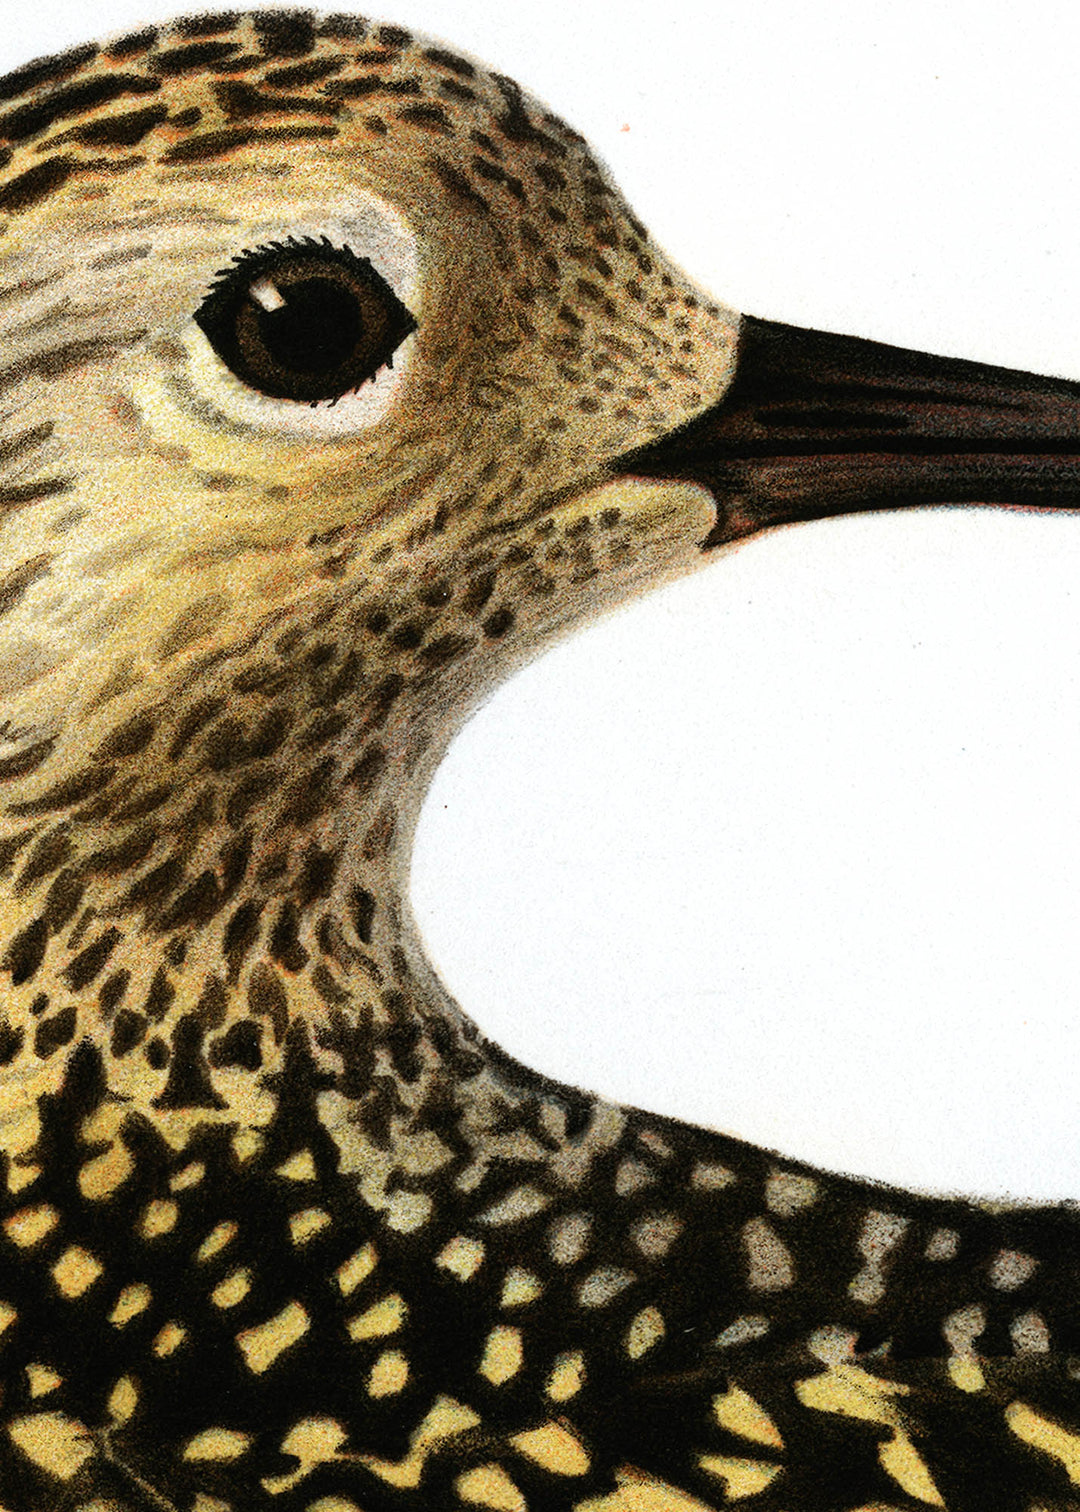 Fågeln Ljungpipare, ung höst på klassisk vintage poster/affisch